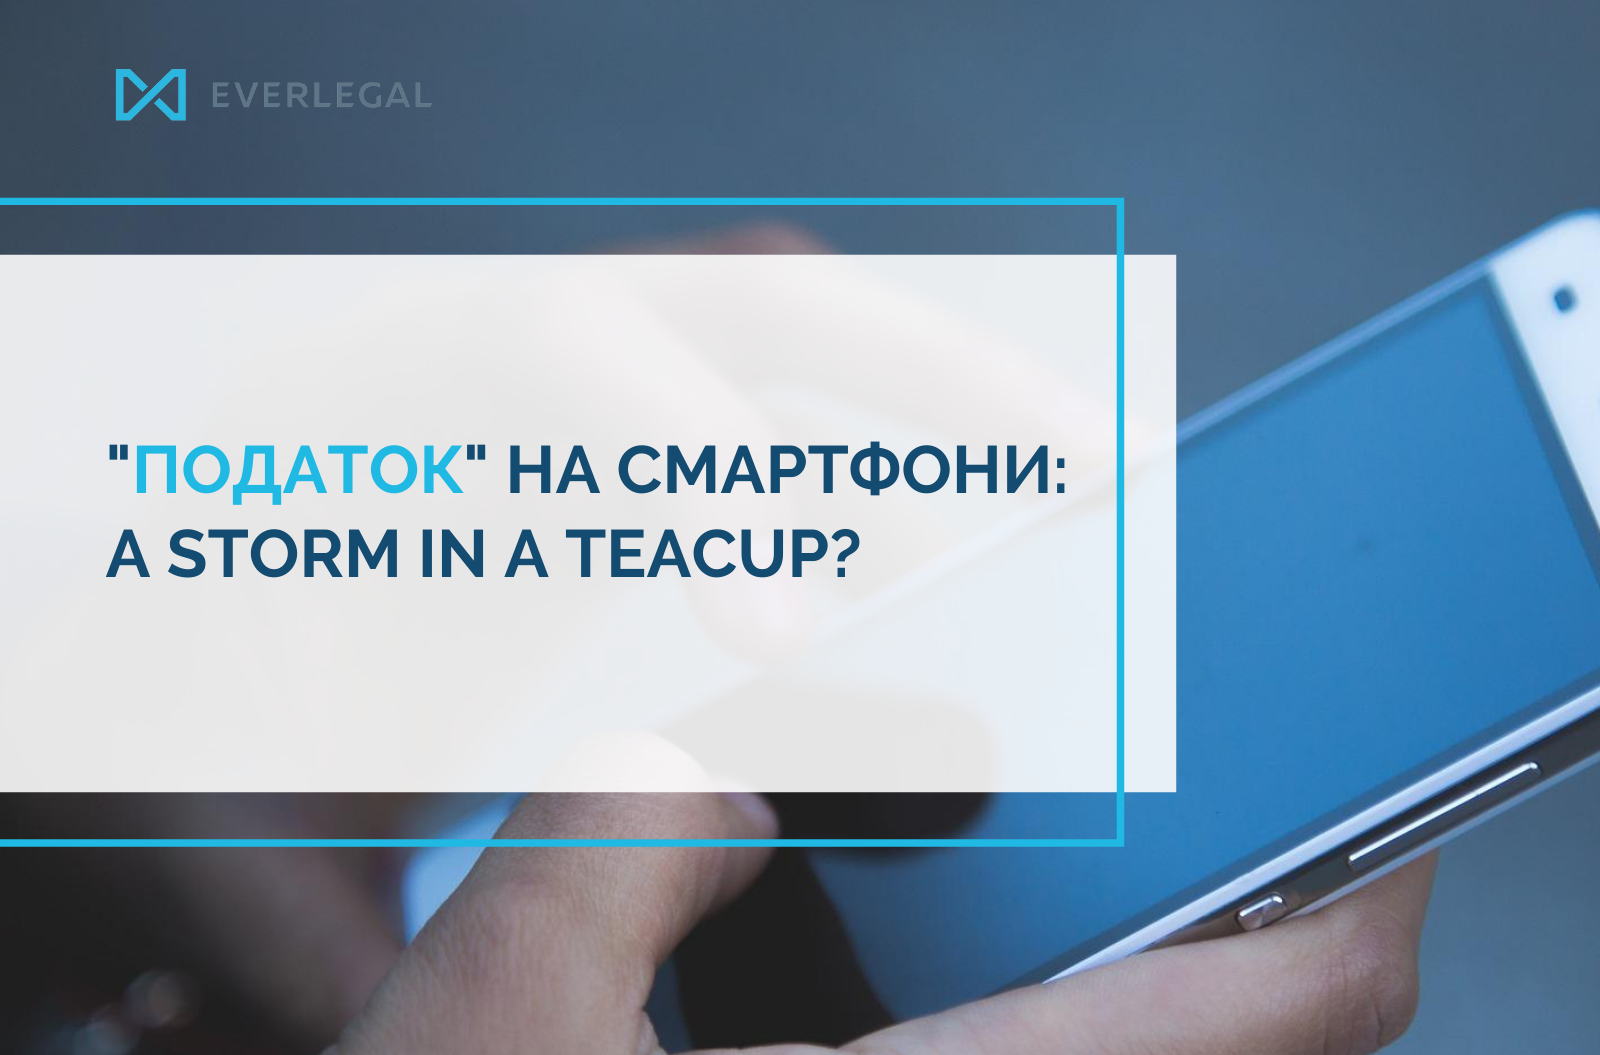 Tax on smartphones in Ukraine